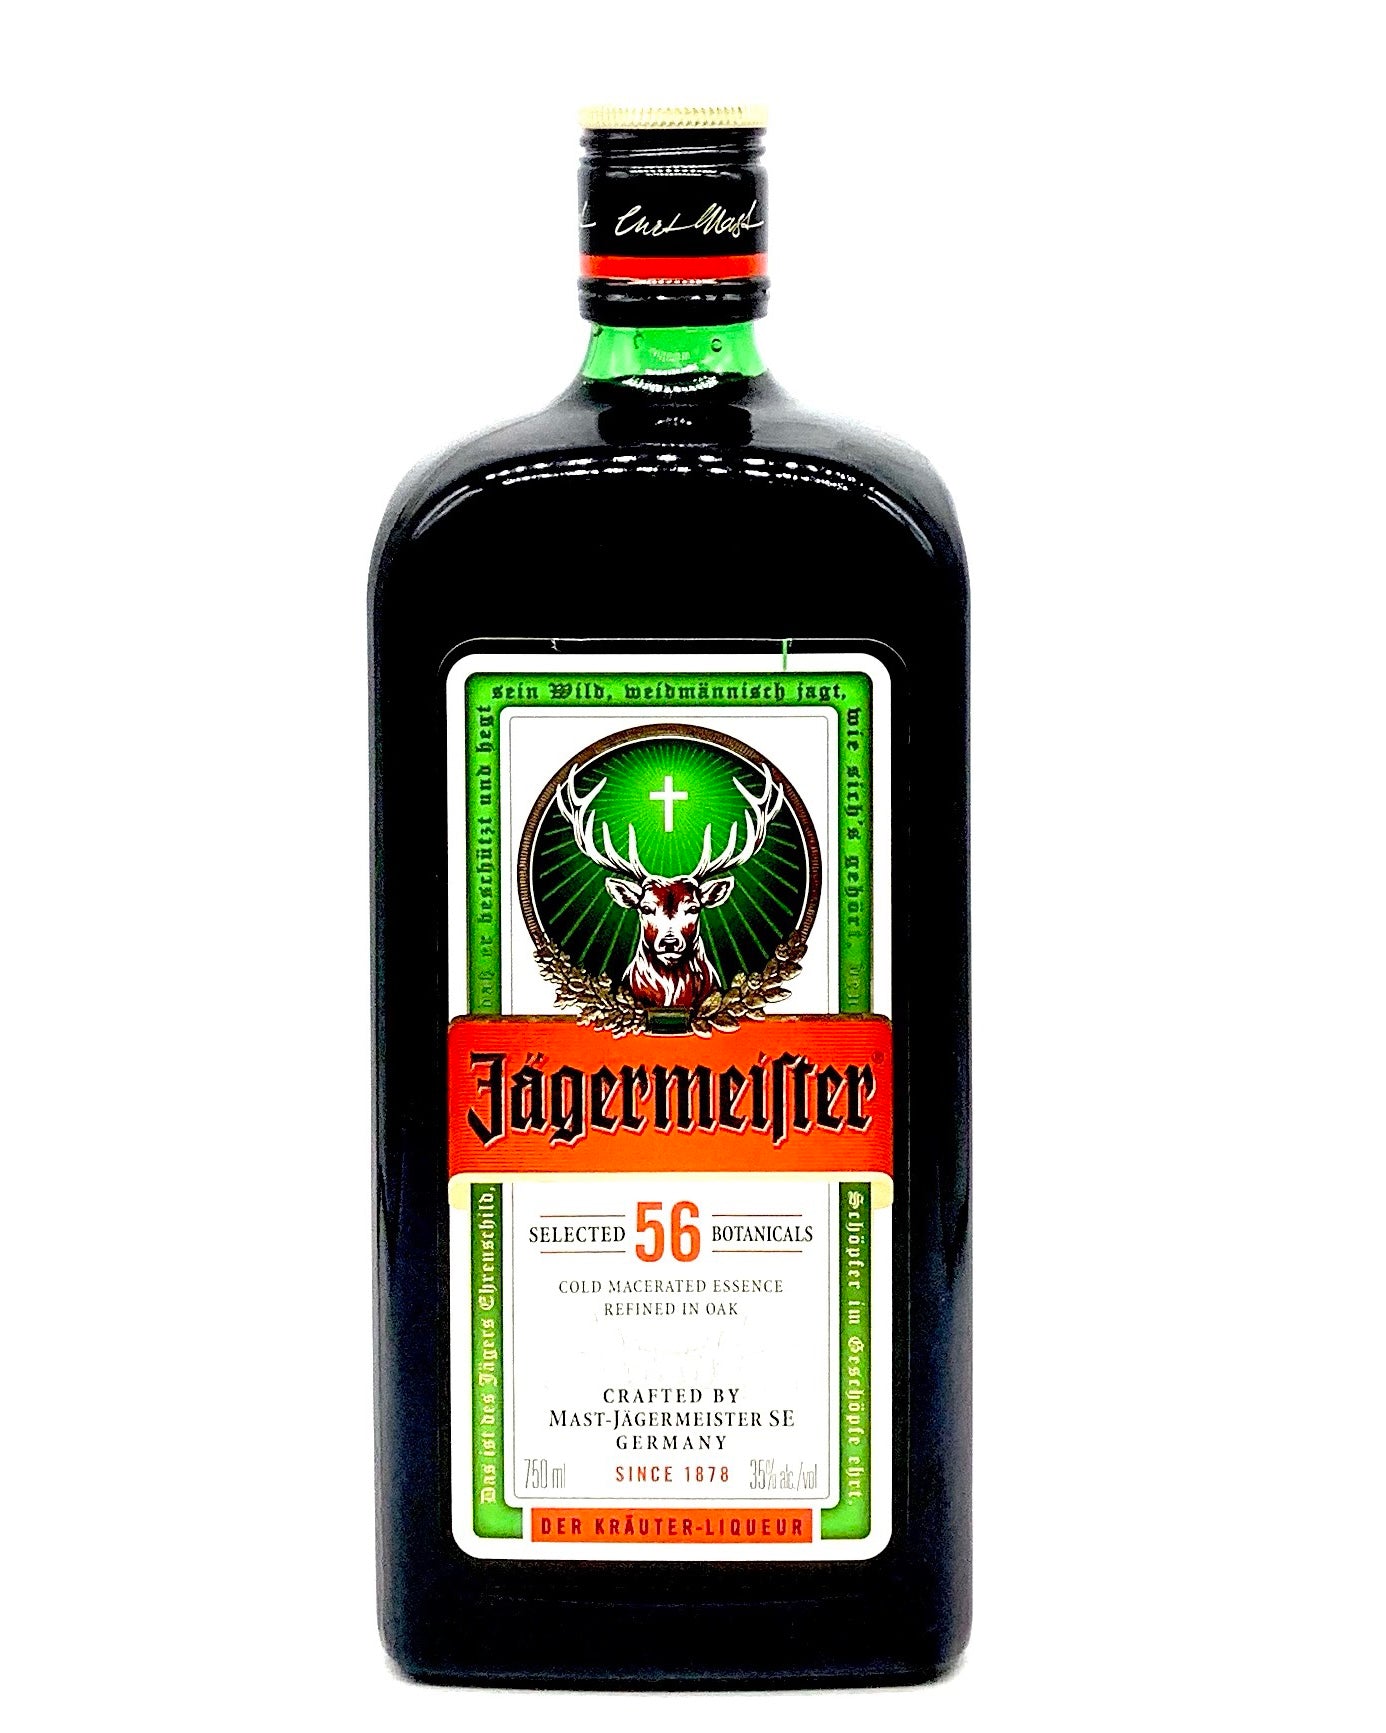 Jägermeister - Herbal liqueurs